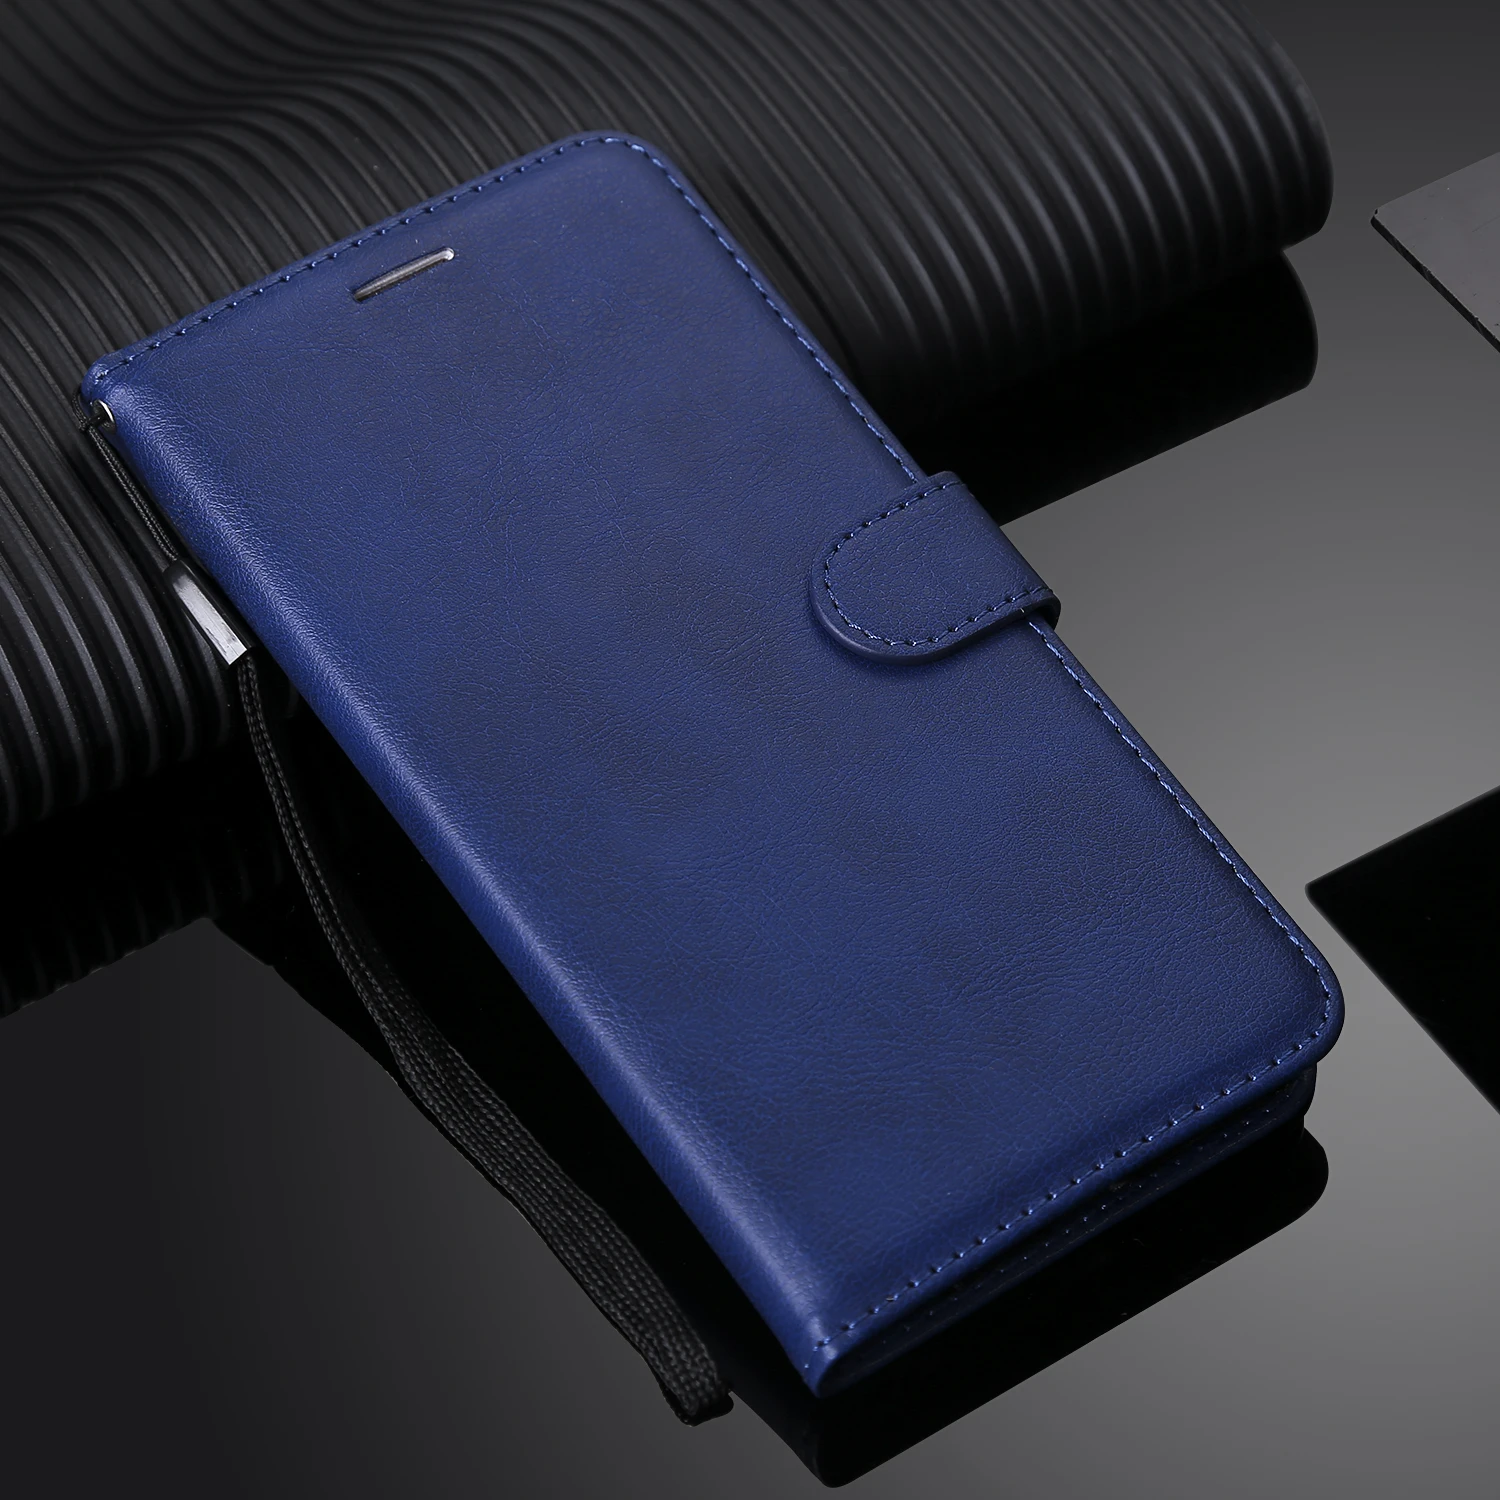 Фото Флип кошелек из искусственной кожи чехол для телефона Huawei MATE 7 8 9 10 20 Lite 20X Y5 Y7 Y6 Pro(China)